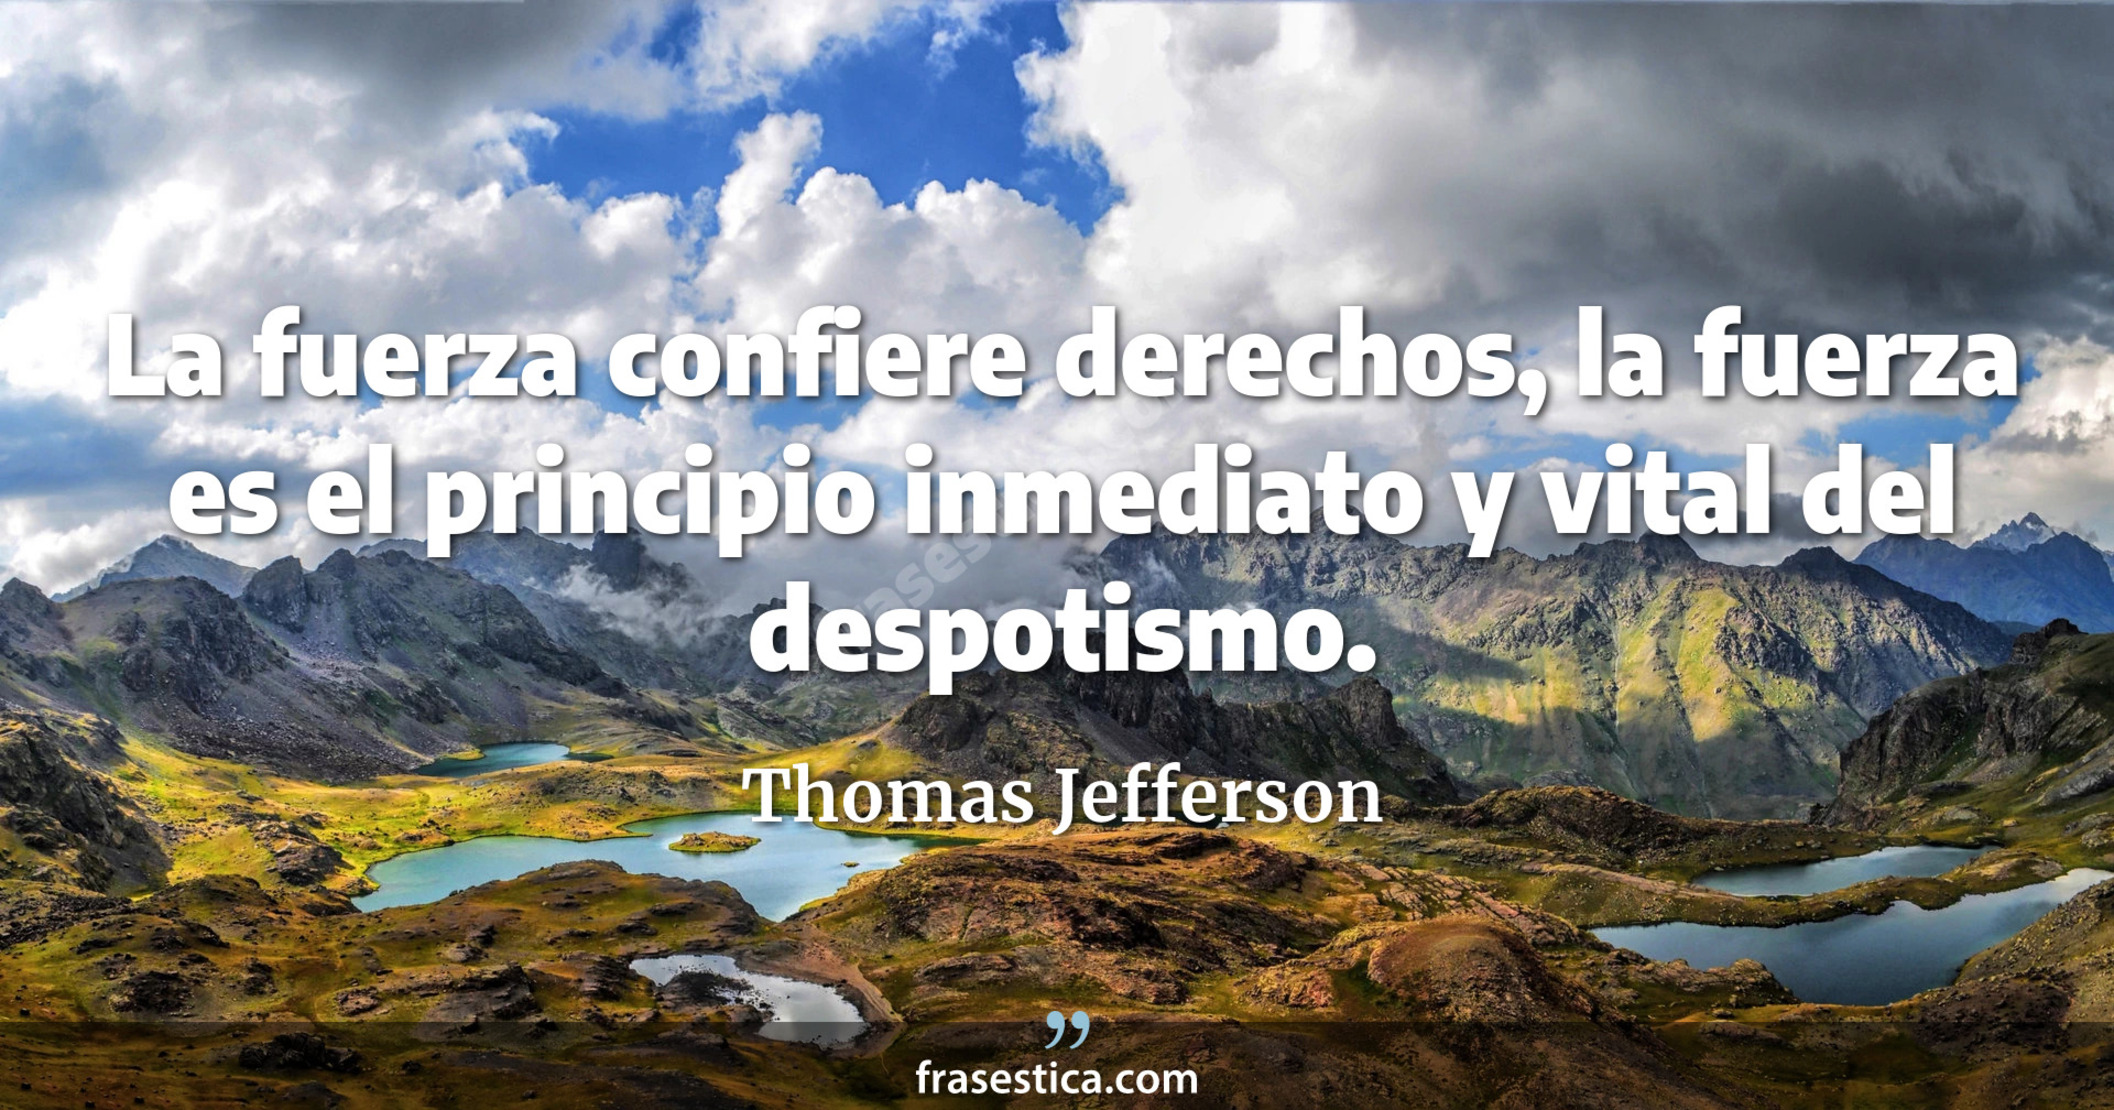 La fuerza confiere derechos, la fuerza es el principio inmediato y vital del despotismo. - Thomas Jefferson